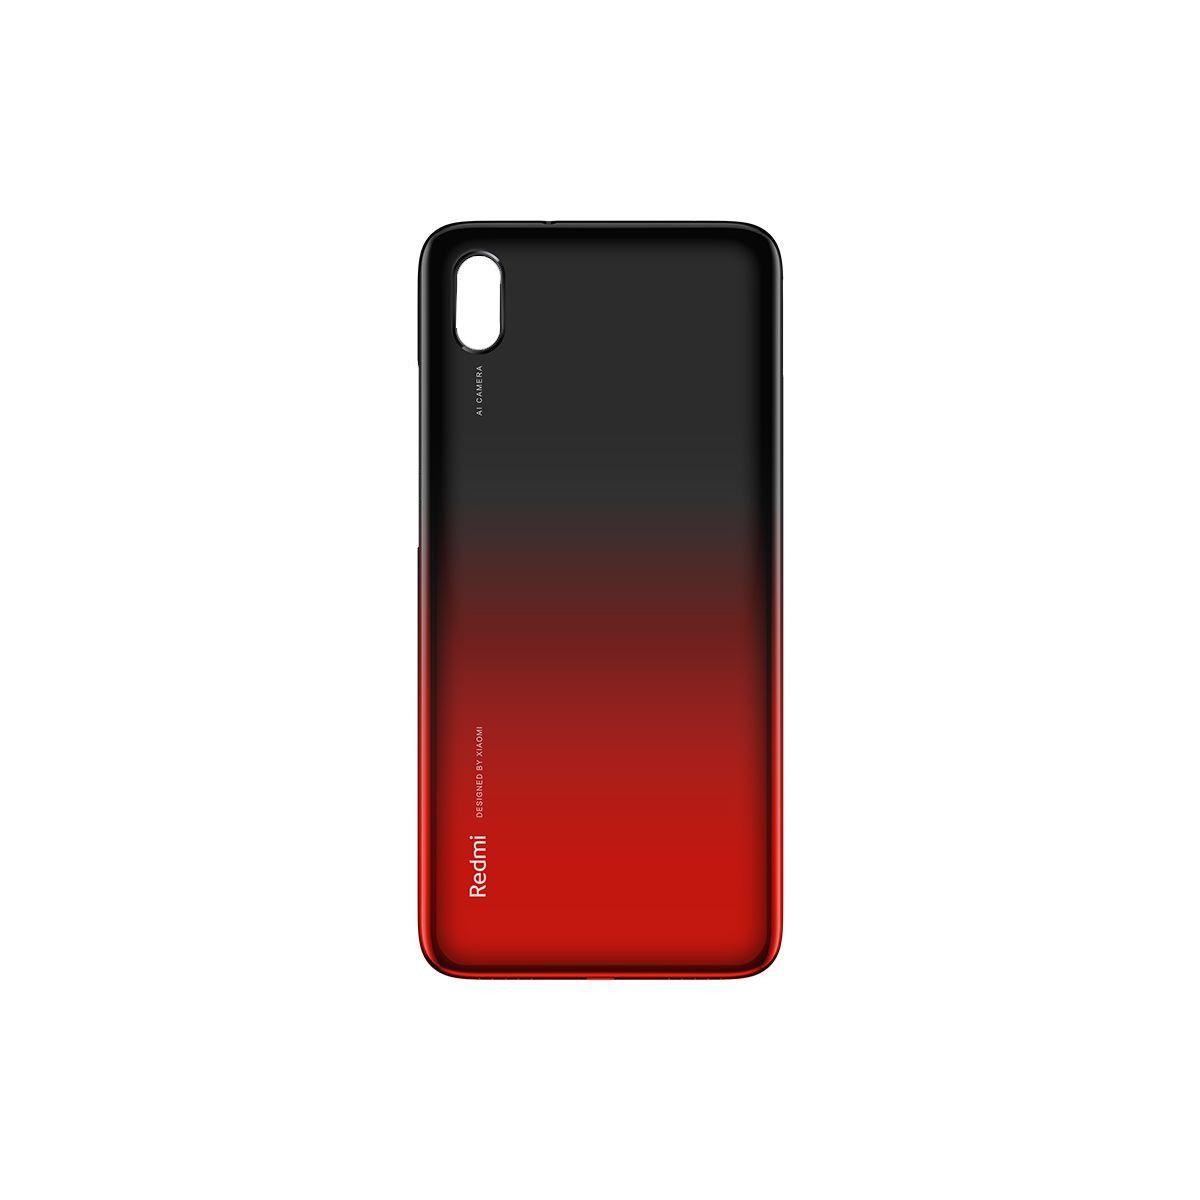 Originál kryt baterie Xiaomi Redmi 7A červený